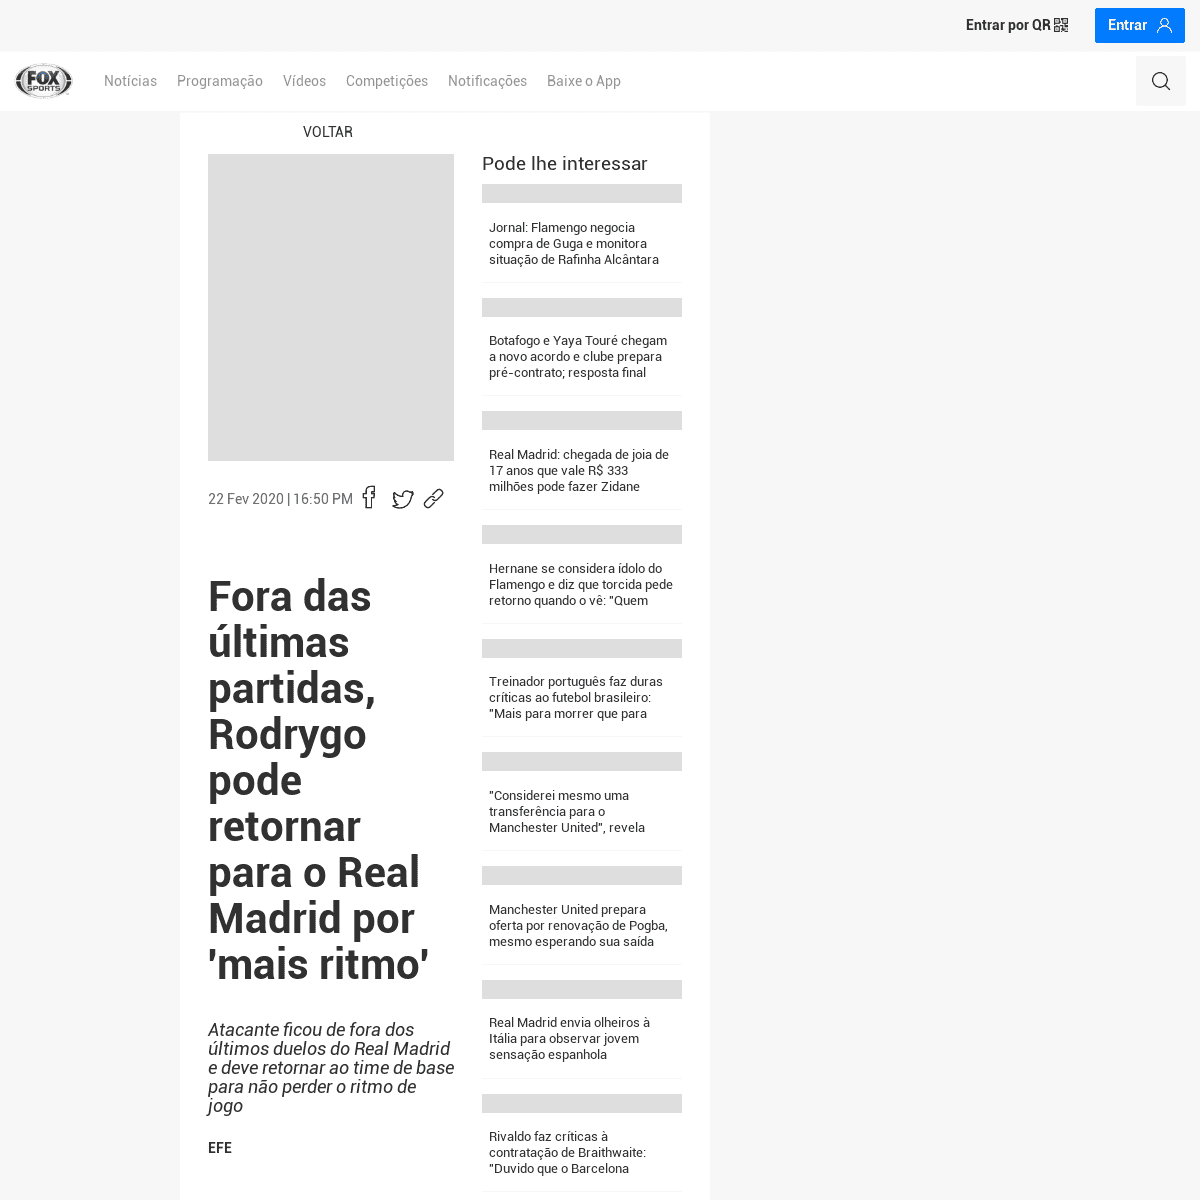 A complete backup of www.foxsports.com.br/br/article/fora-das-ultimas-partidas-rodrygo-pode-retornar-para-o-real-madrid-por-mais